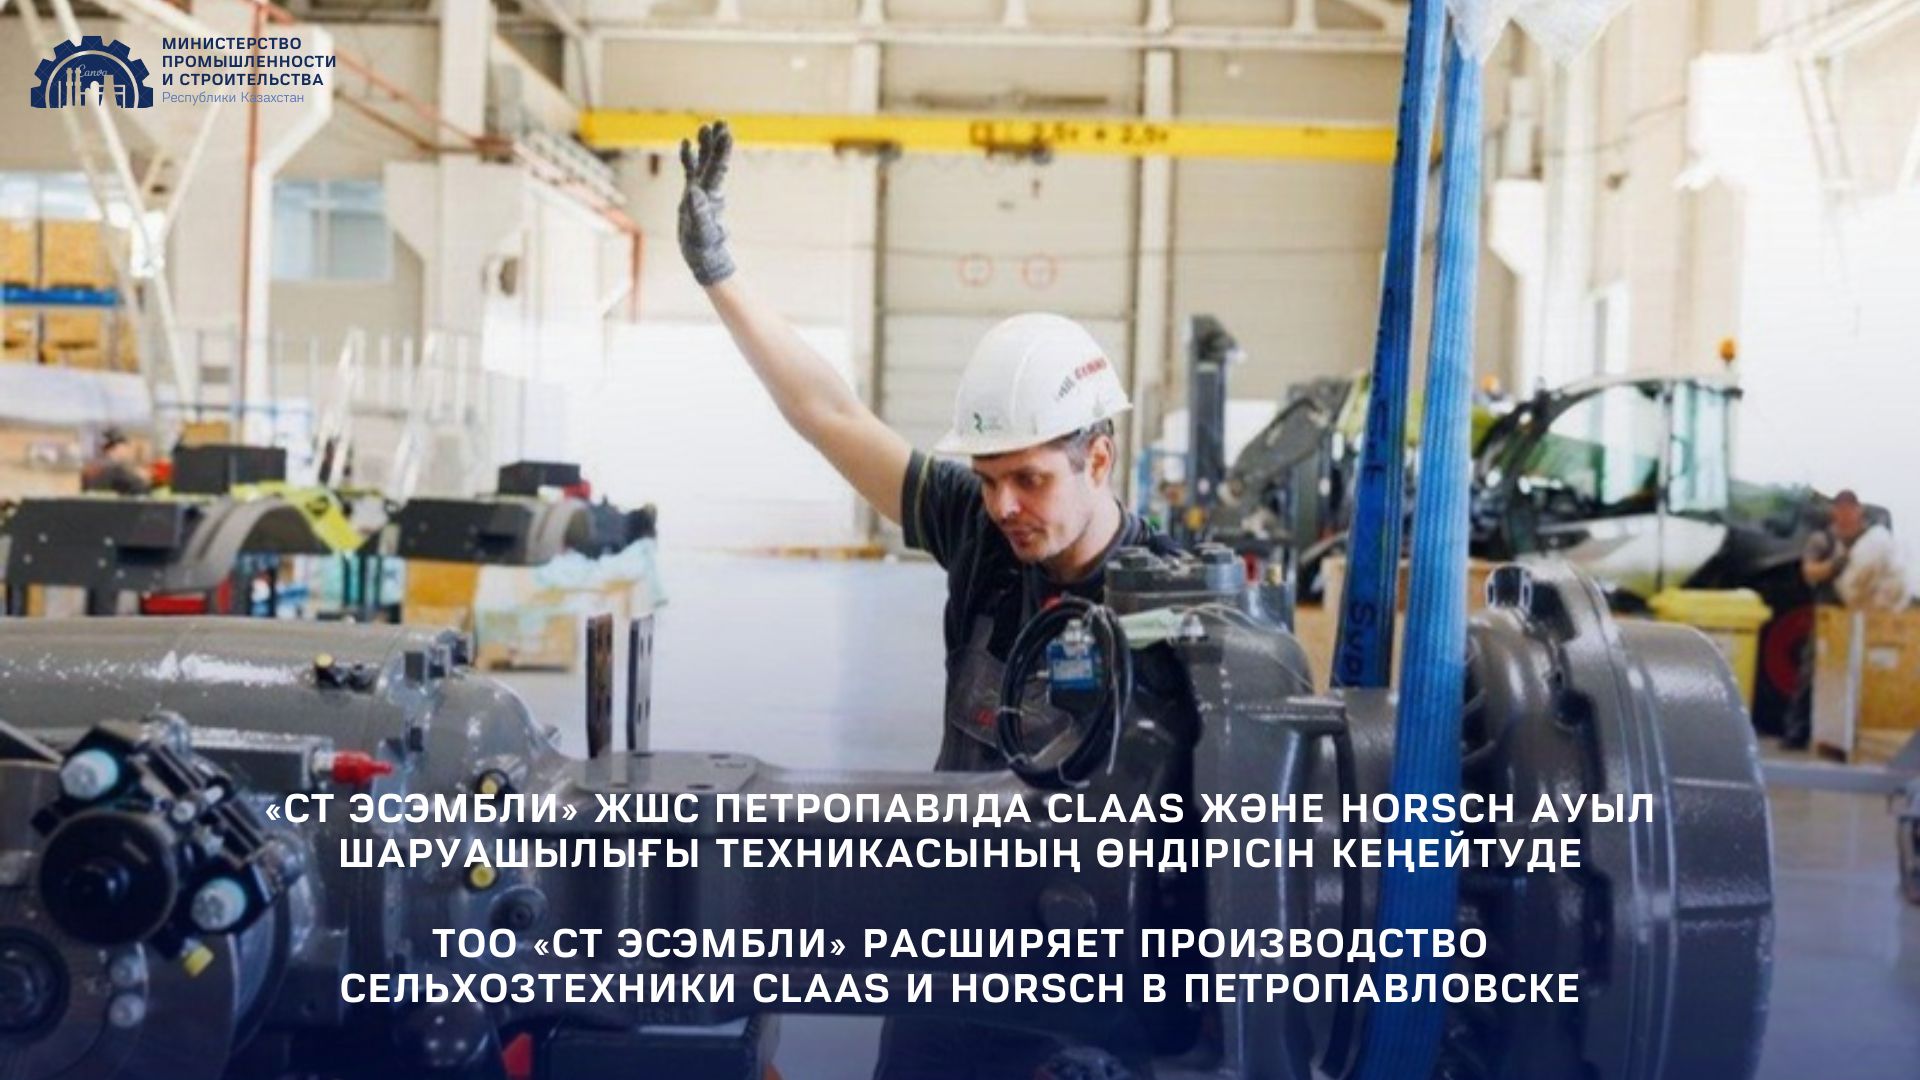 ТОО «СТ ЭСЭМБЛИ» расширяет производство сельхозтехники CLAAS и HORSCH в Петропавловске